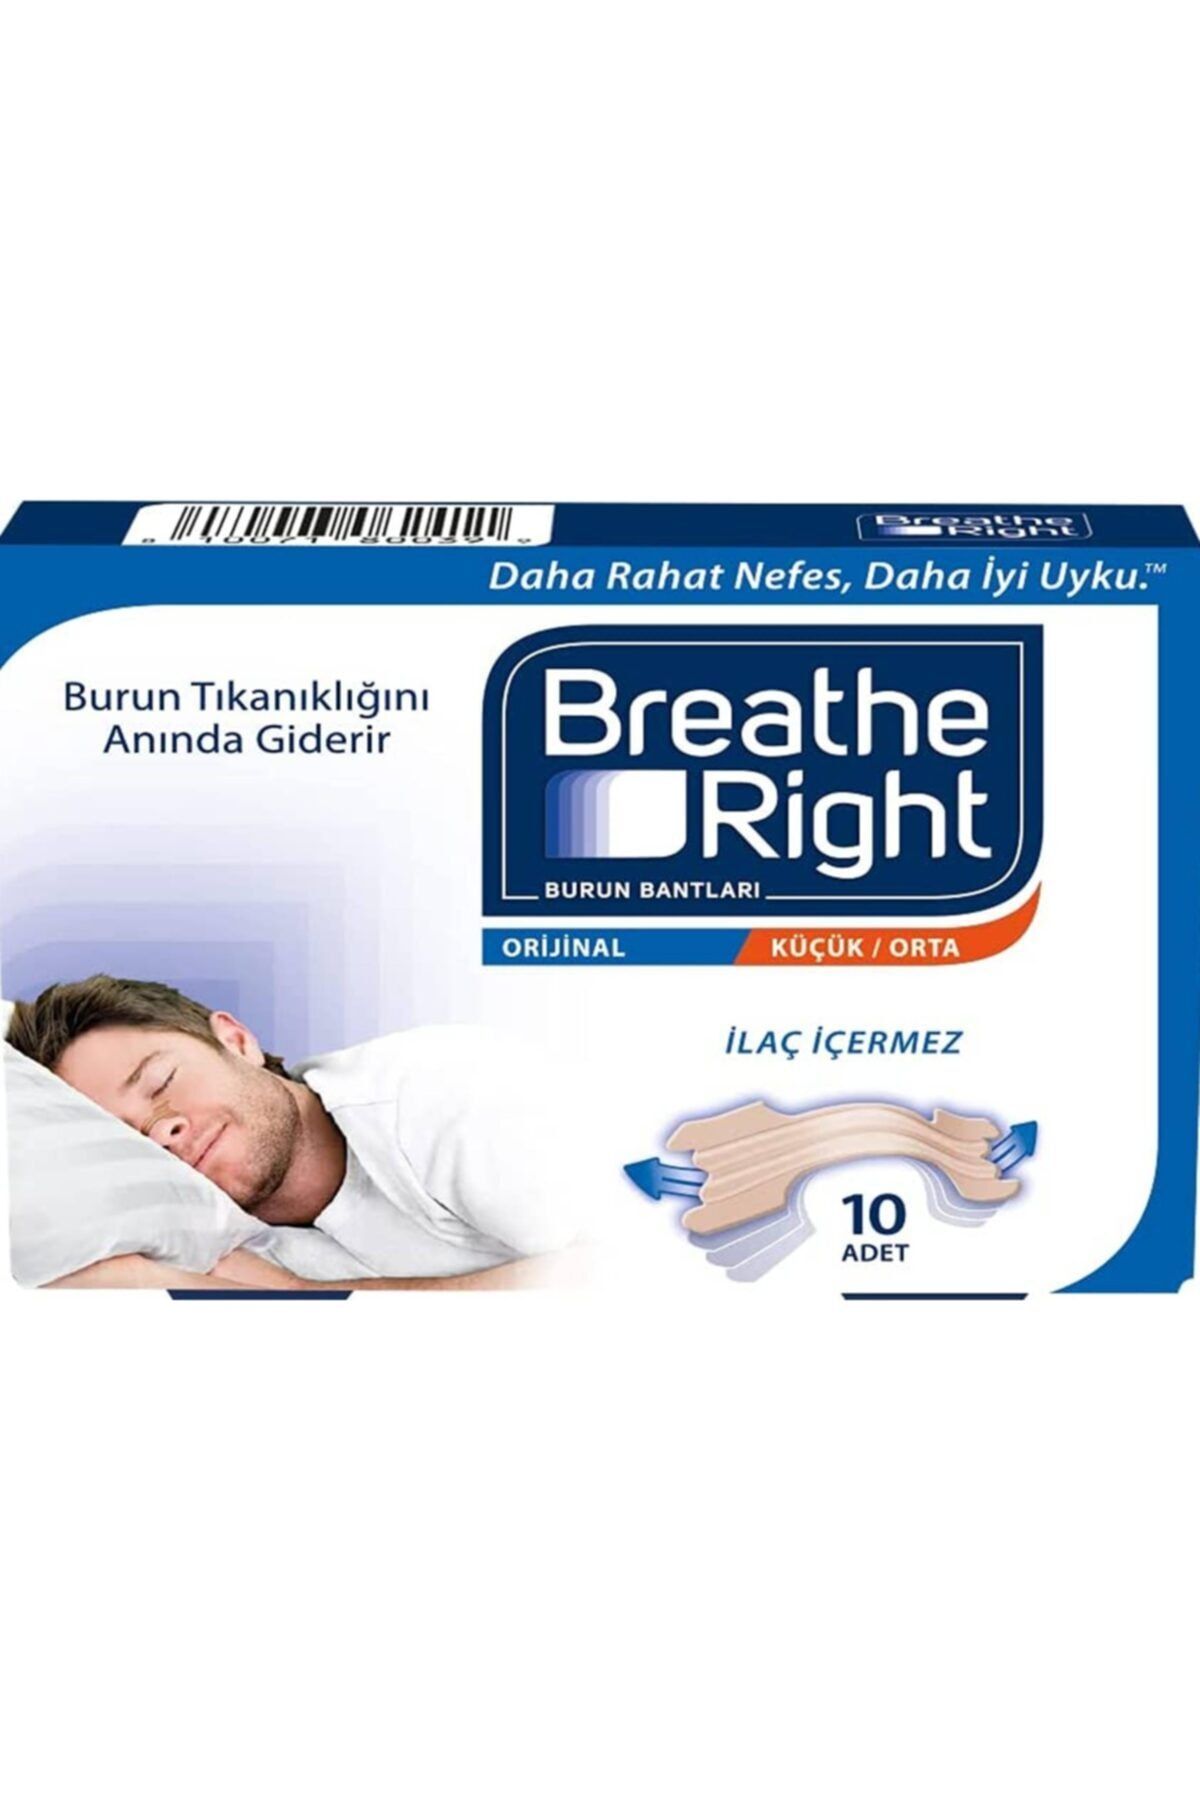 Breathe Right Orijinal (klasik) Burun Bantı Yeni Ambalajında 90 Adet